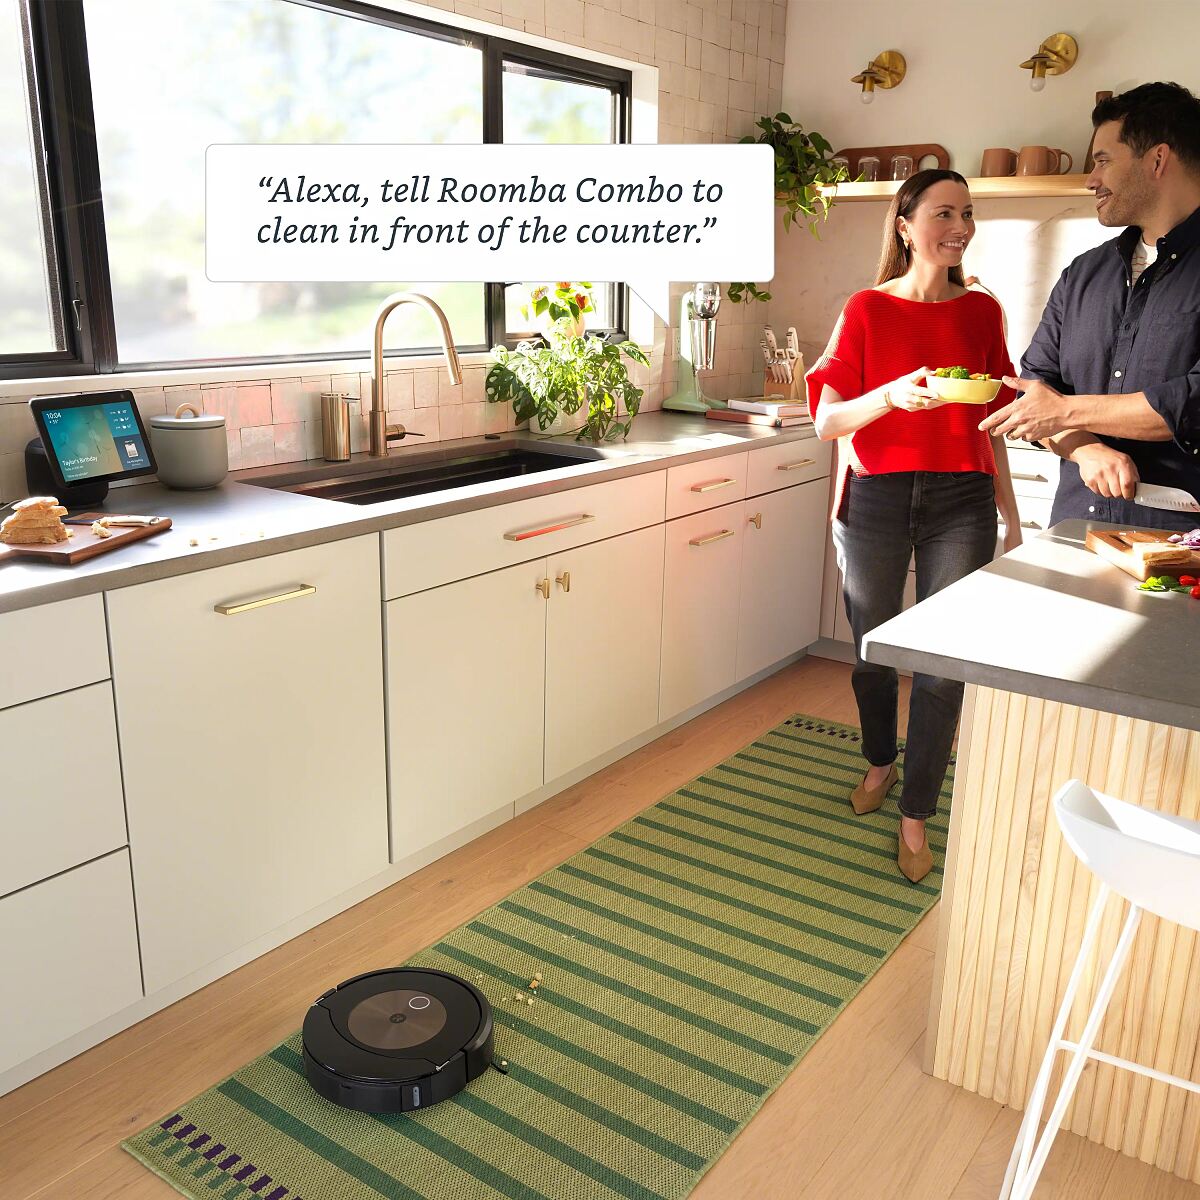 iRobot_RoombaCombo_j9+_Kitchen_Alexa